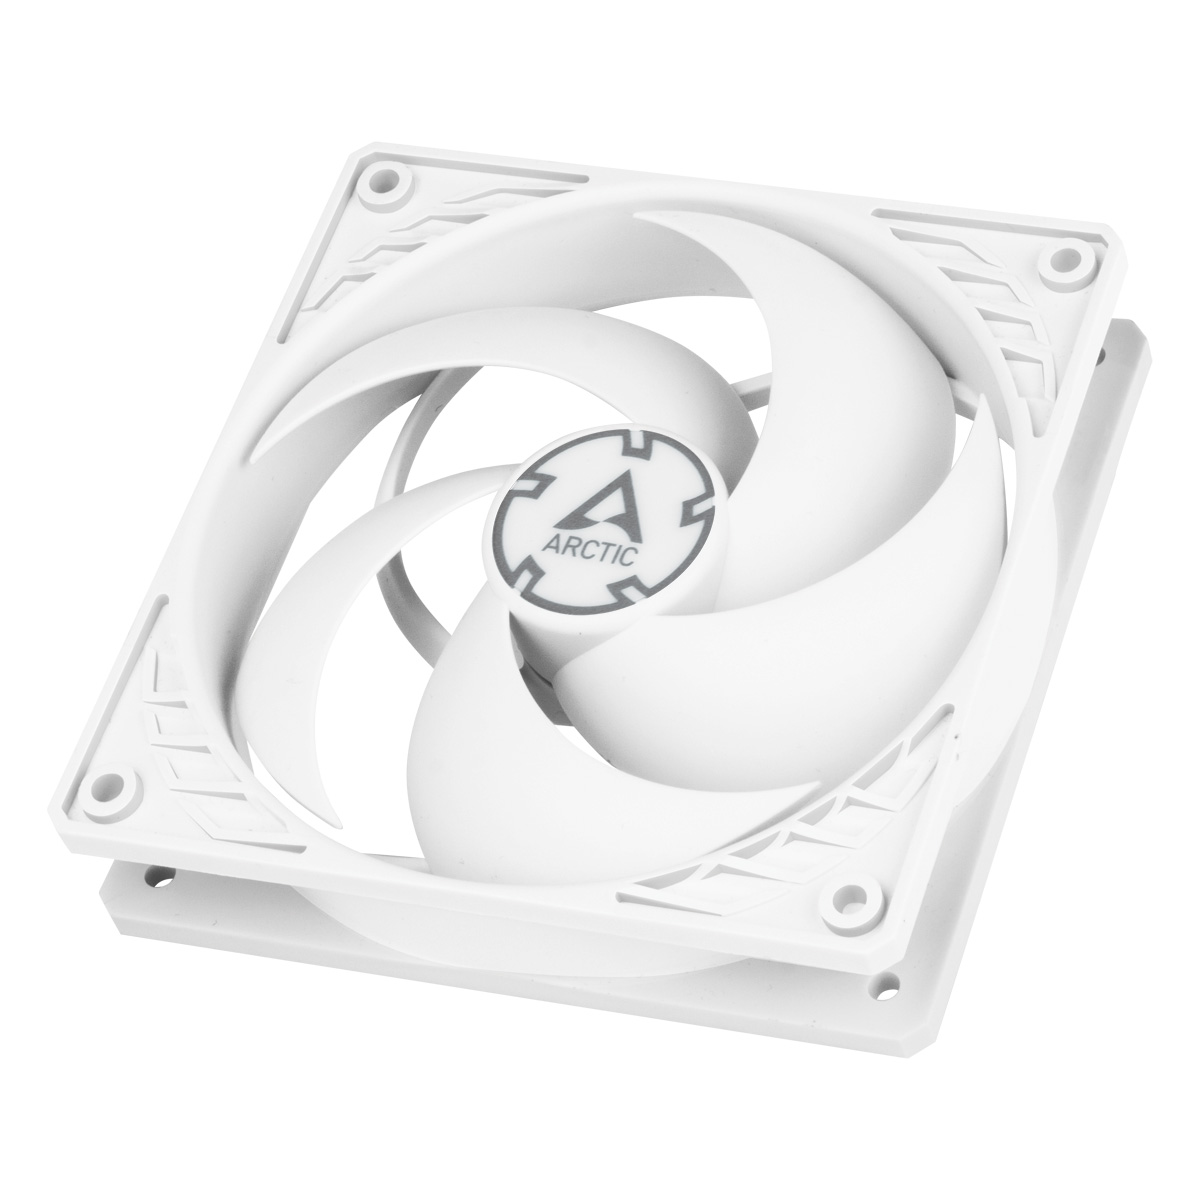 ARCTIC P12 Max : Un Ventilateur Tout Blanc - Pause Hardware